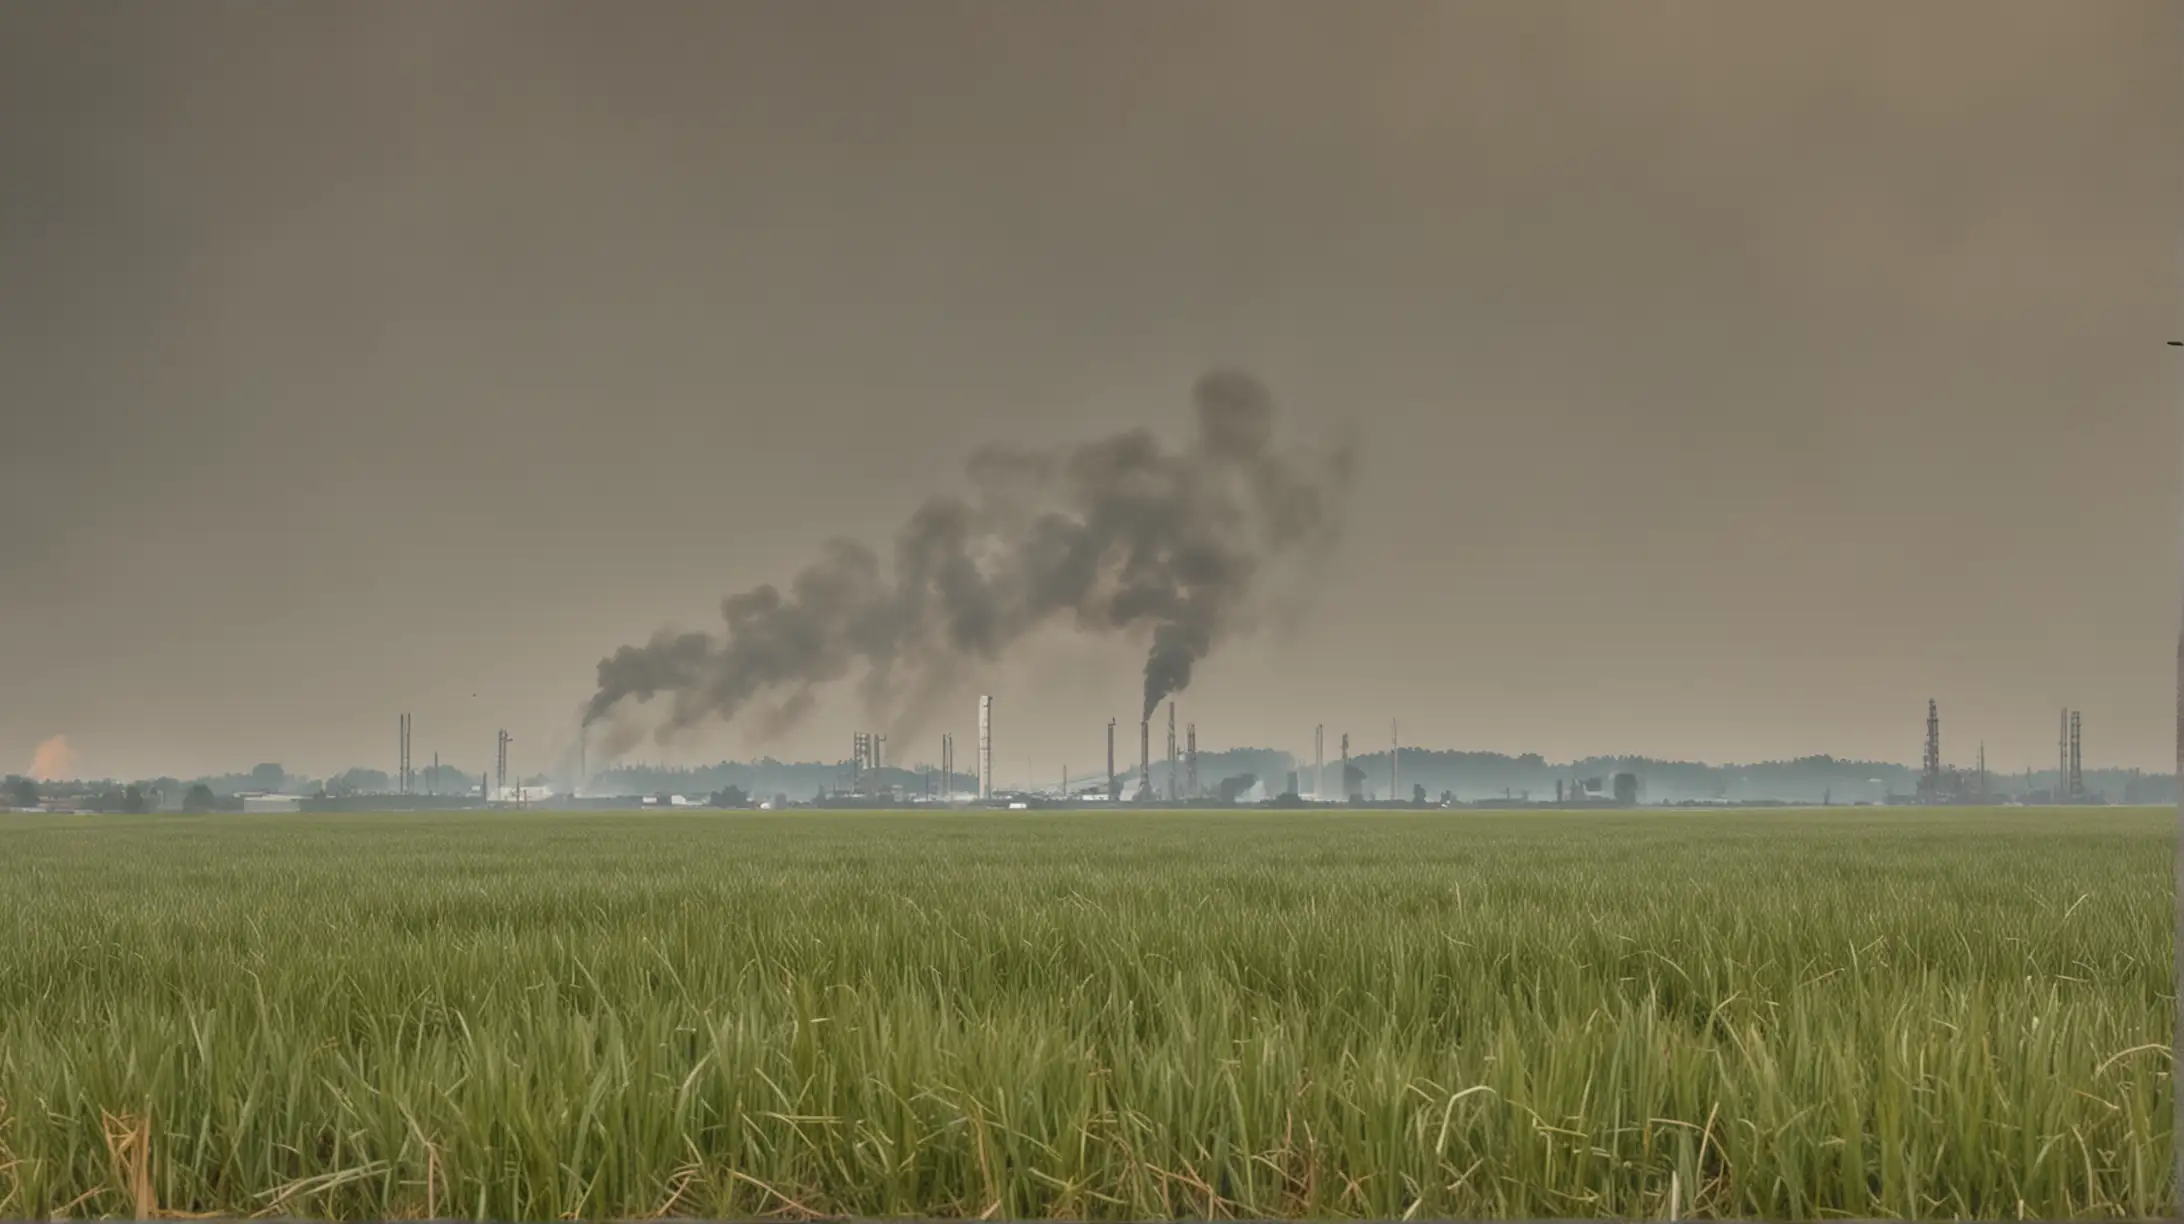 landscape grass field industry high smoke in distance